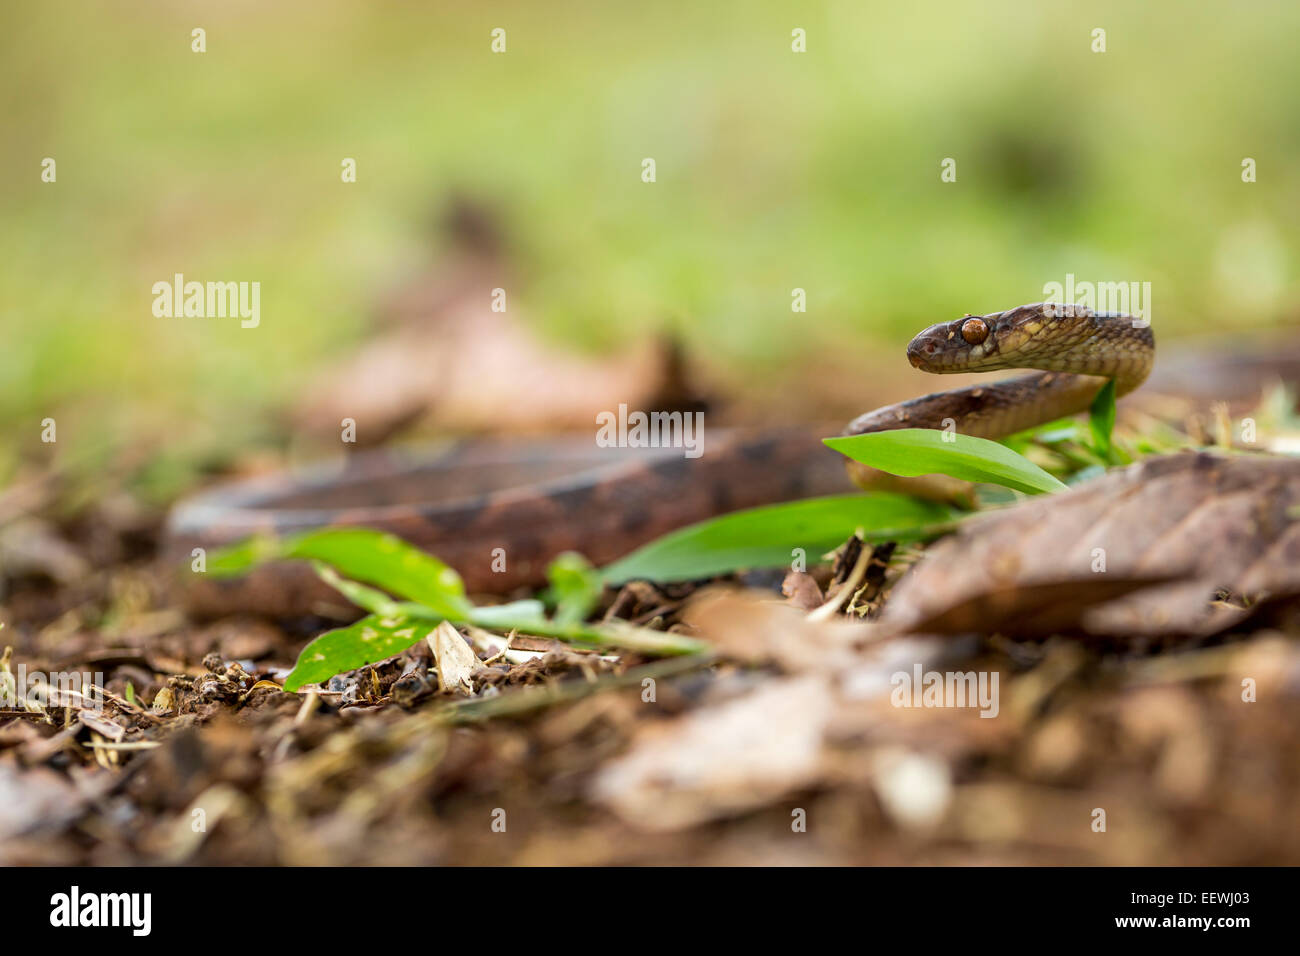 Northern Cat-eyed Snake Leptodeira septentrionalis amongst leaf litter near Boca Tapada, Costa Rica, February, 2014. Stock Photo